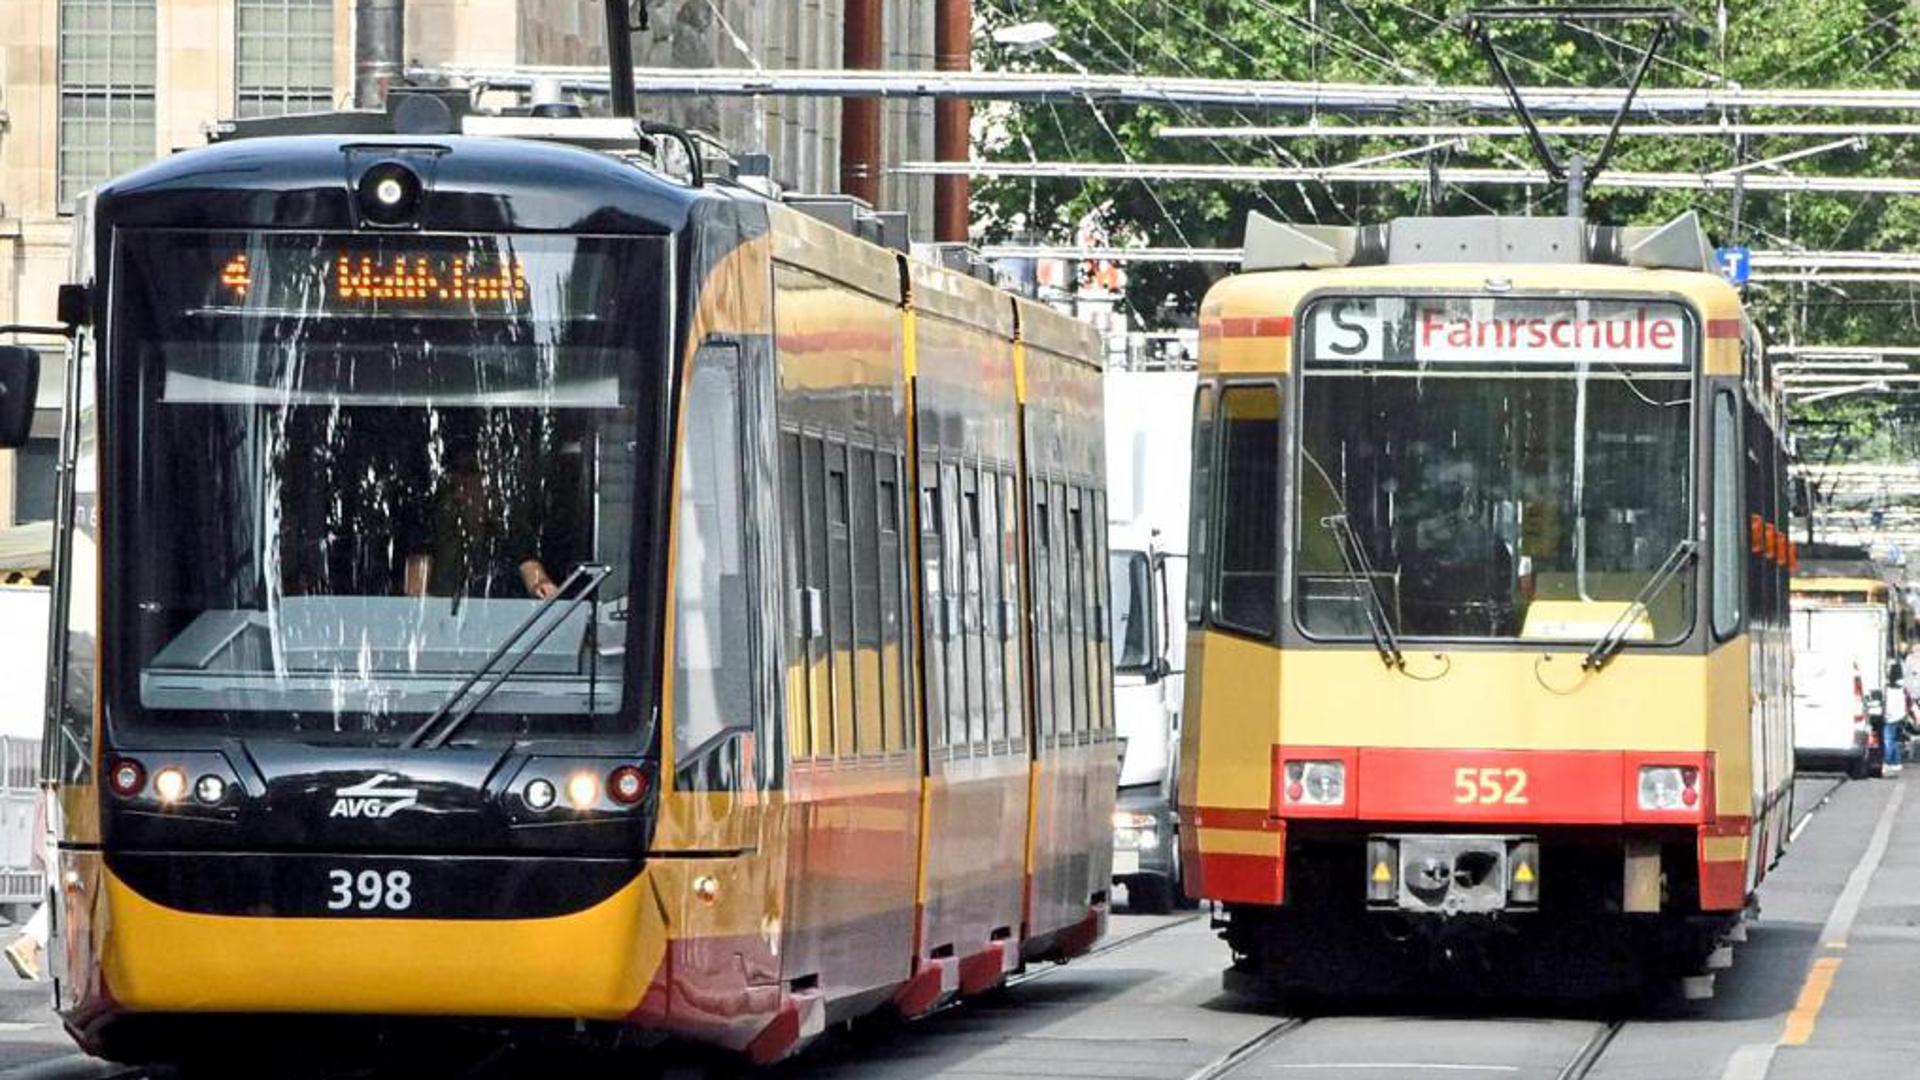 Bei Straßenbahnen in Karlsruhe gibt es aktuell vermehrte Fahrtausfälle wegen eines „temporären Fahrermangels“. Bei der in den zurückliegenden Jahren stark kritisierten AVG sind mittlerweile alle Stellen besetzt.